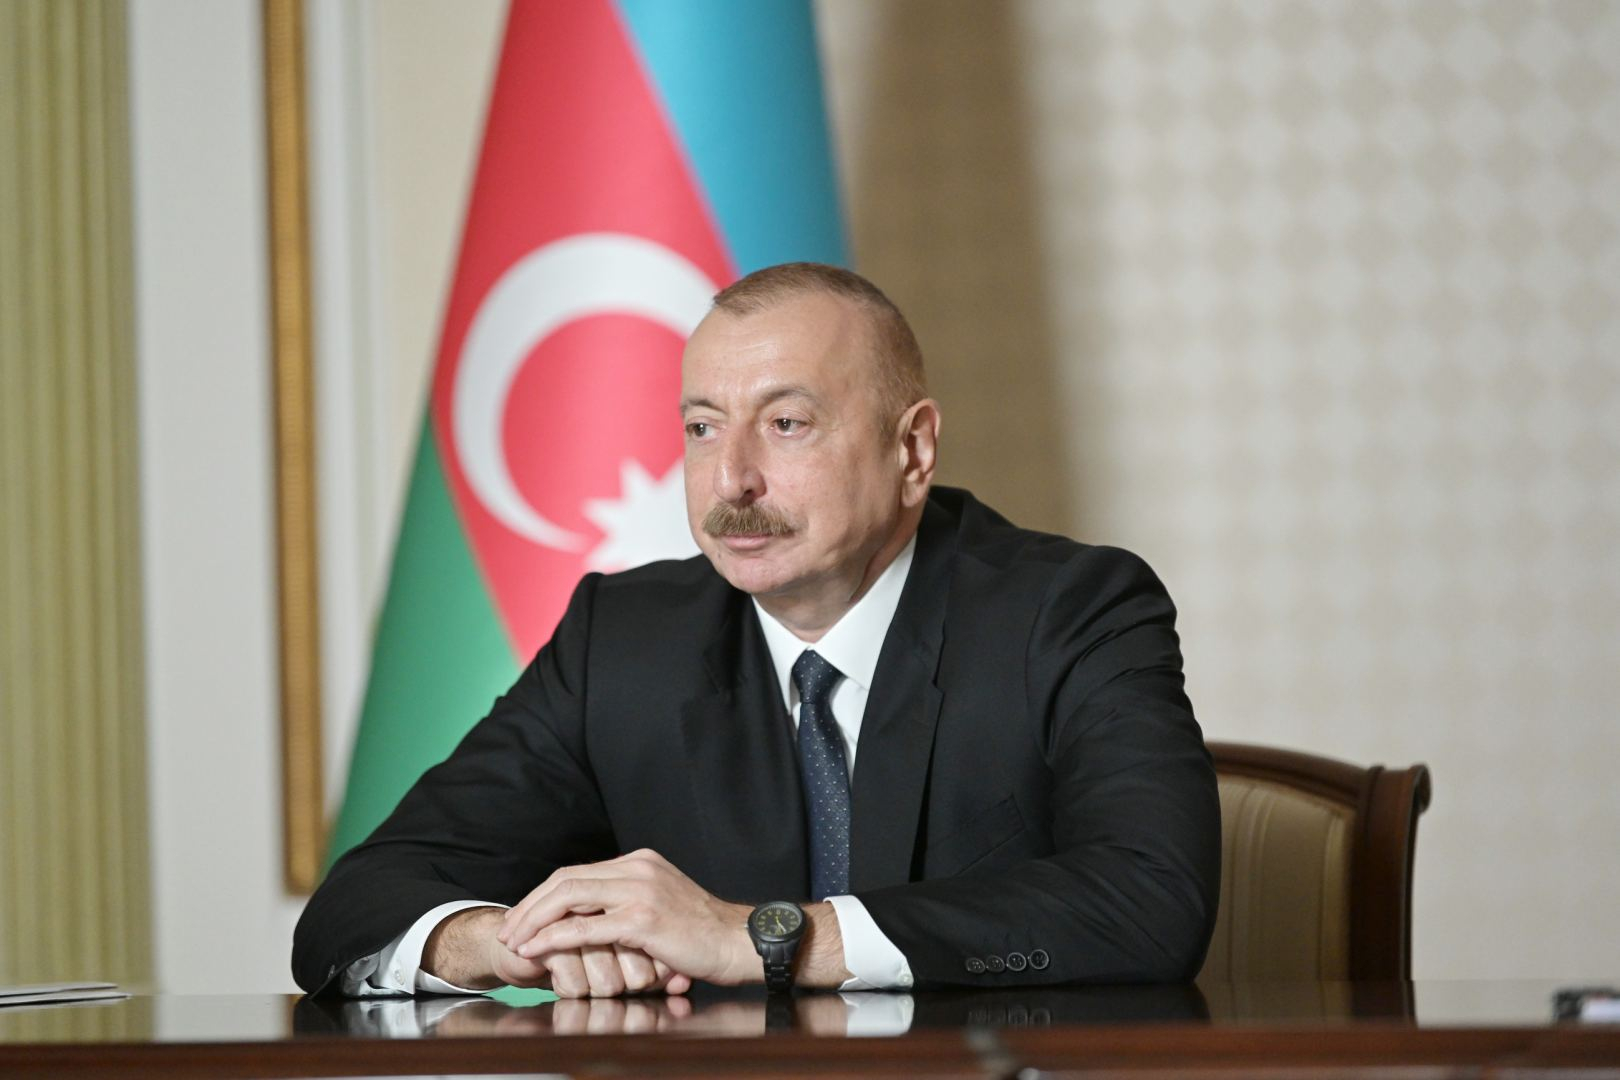 Внесены изменения в устав Агентства наземного транспорта Азербайджана - Указ